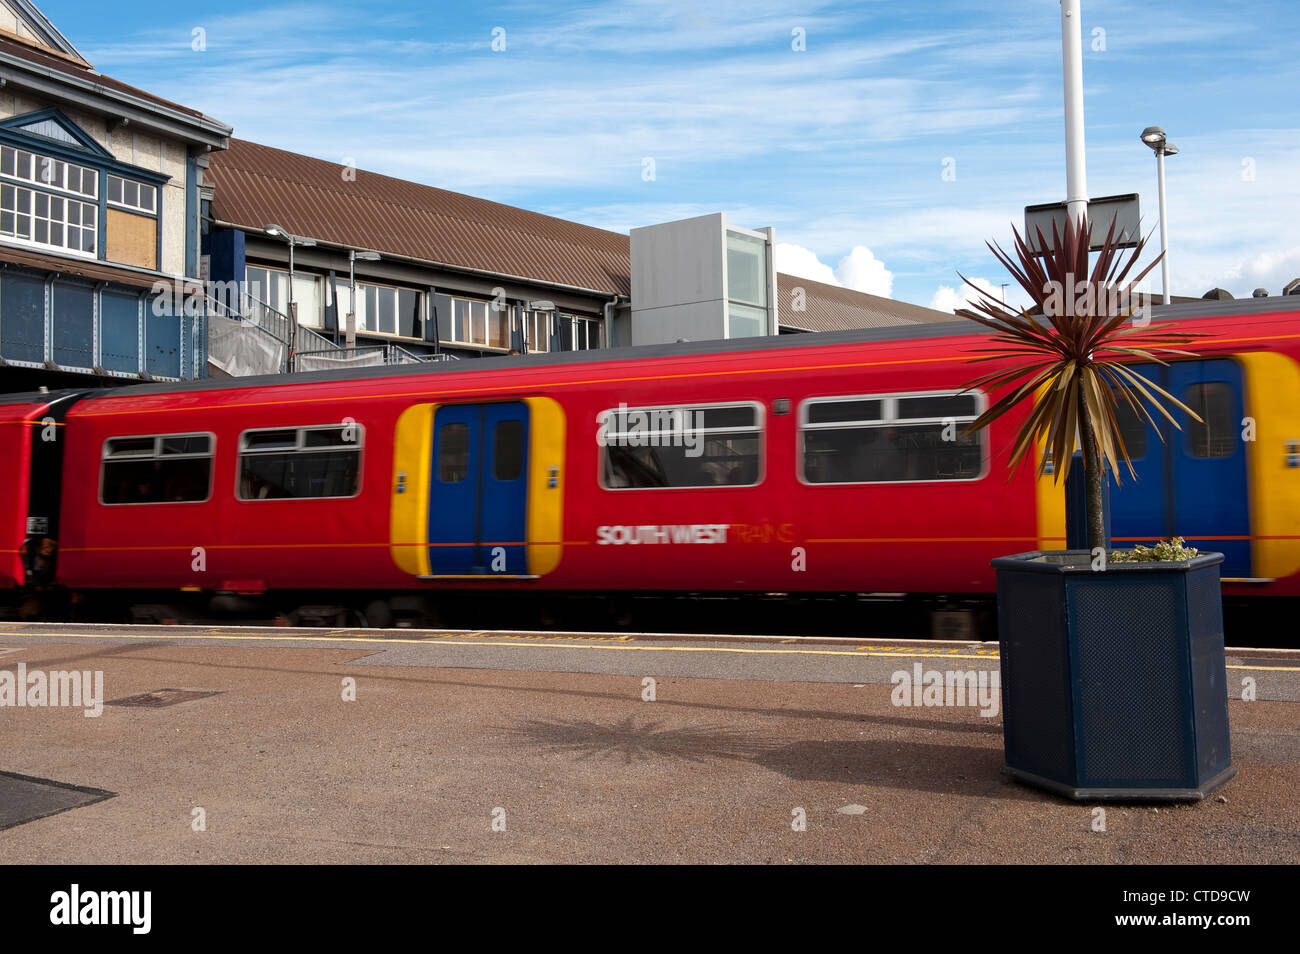 En train Les trains de l'ouest du sud coloré livery en attente à Clapham Junction Railway station, Londres, Angleterre. Banque D'Images